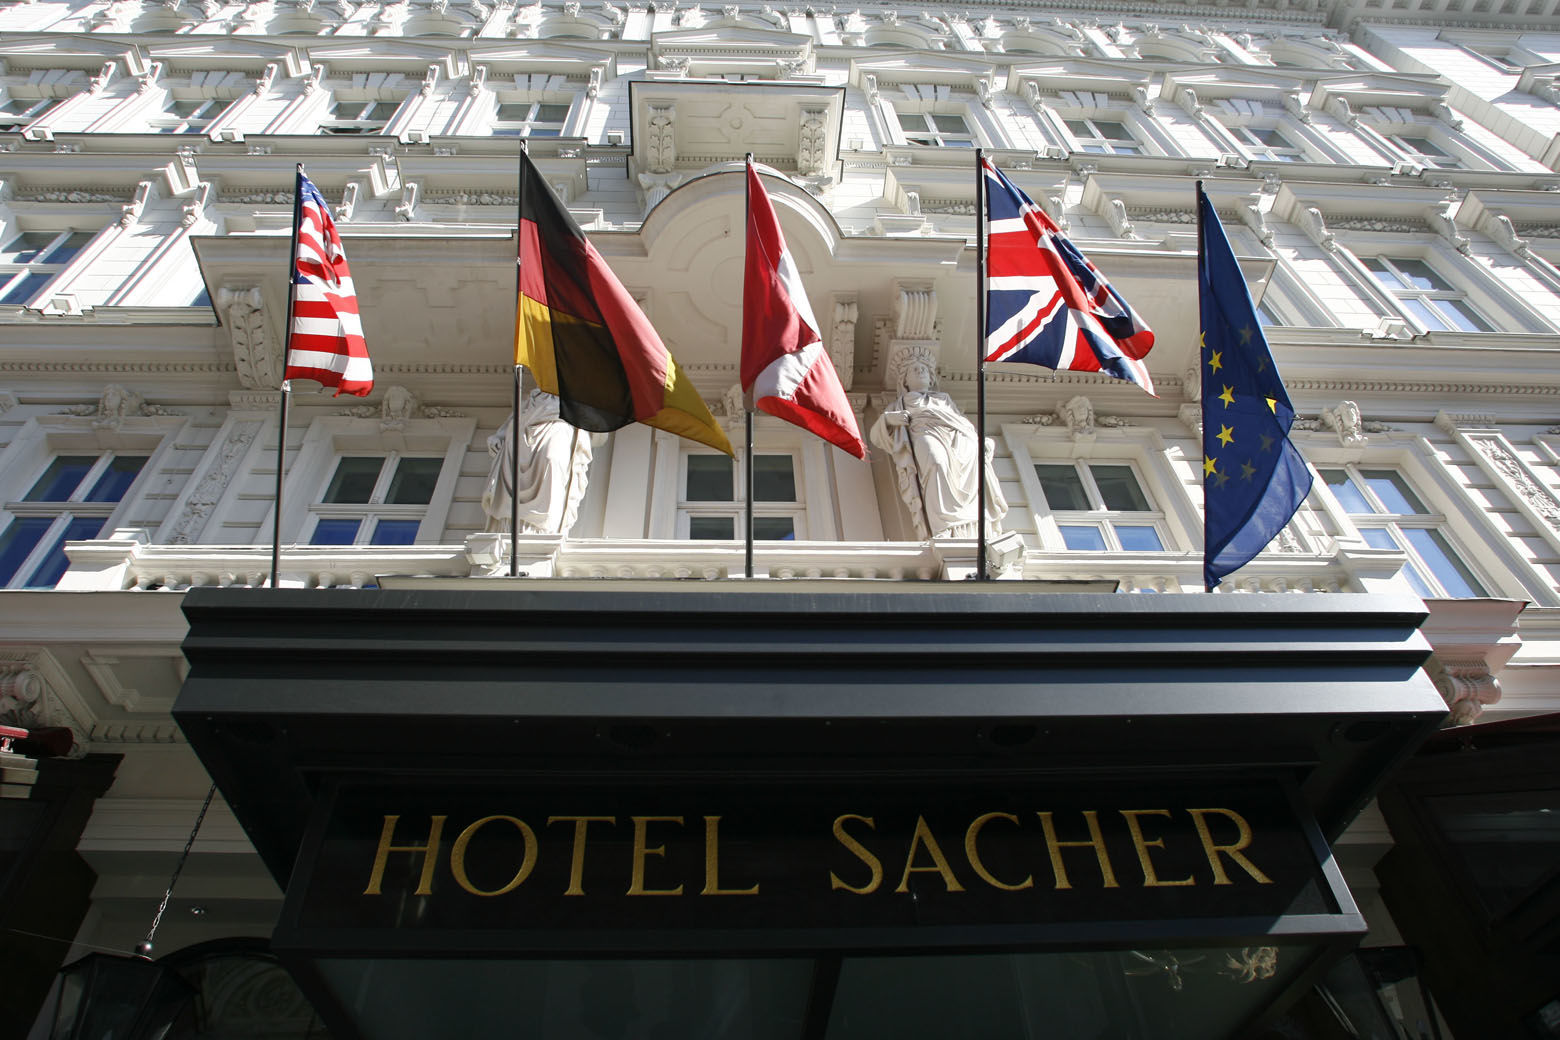 Der Haupteingang zum Hotel Sacher in Wien, aufgenommen am Freitag, 6. April 2007. (AP Photo/Hans Punz) --- The main entrance to Hotel Sacher in Vienna is seen on Friday, April 6, 2007. (AP Photo/Hans Punz)